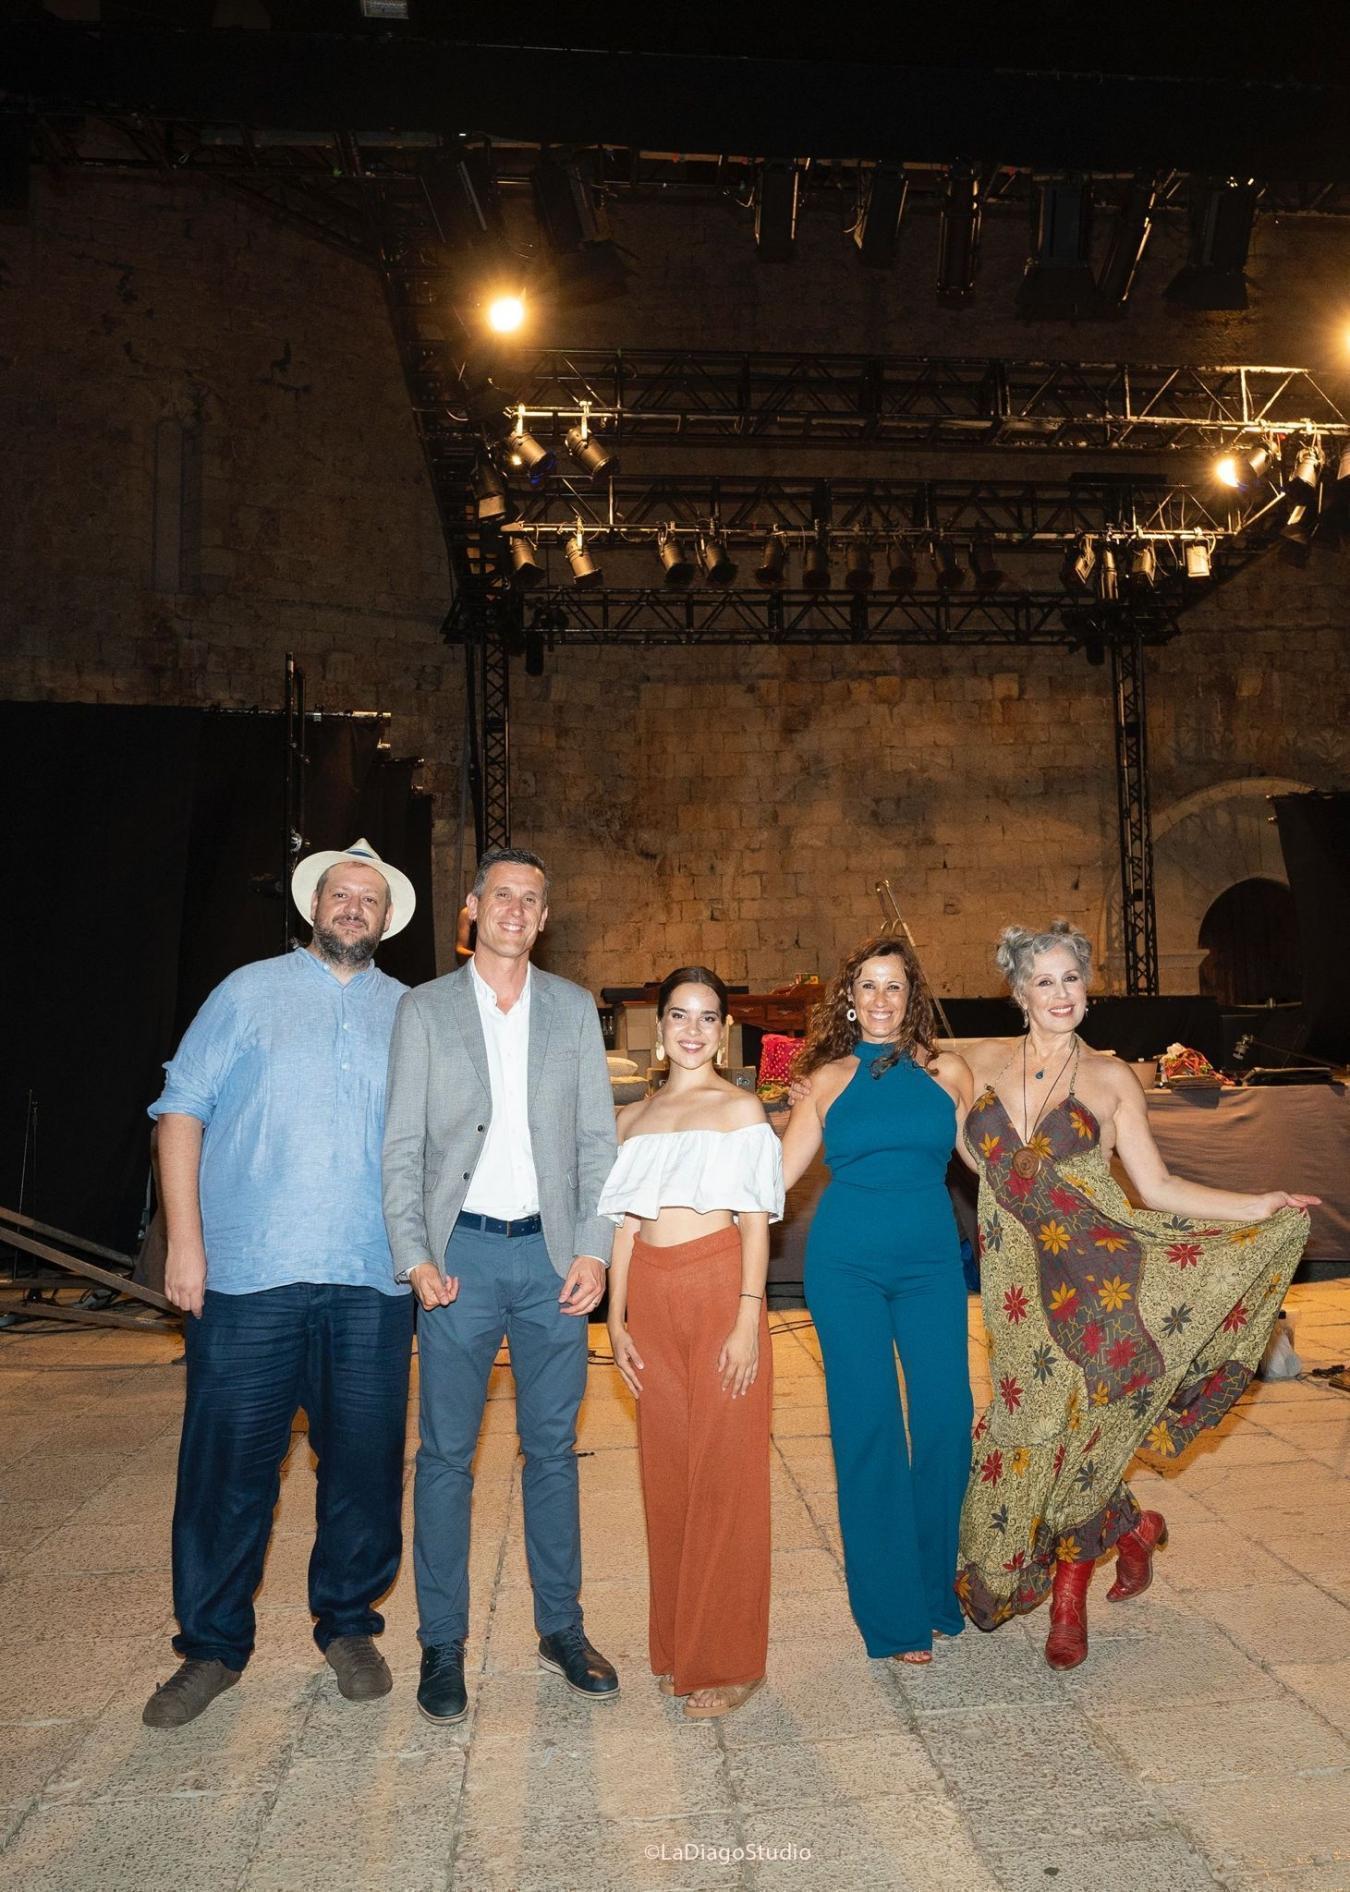 La Diputación de Castellón seguirá apostando por el Festival de Teatro Clásico de Peñíscola para consolidarlo en la élite de las artes escénicas